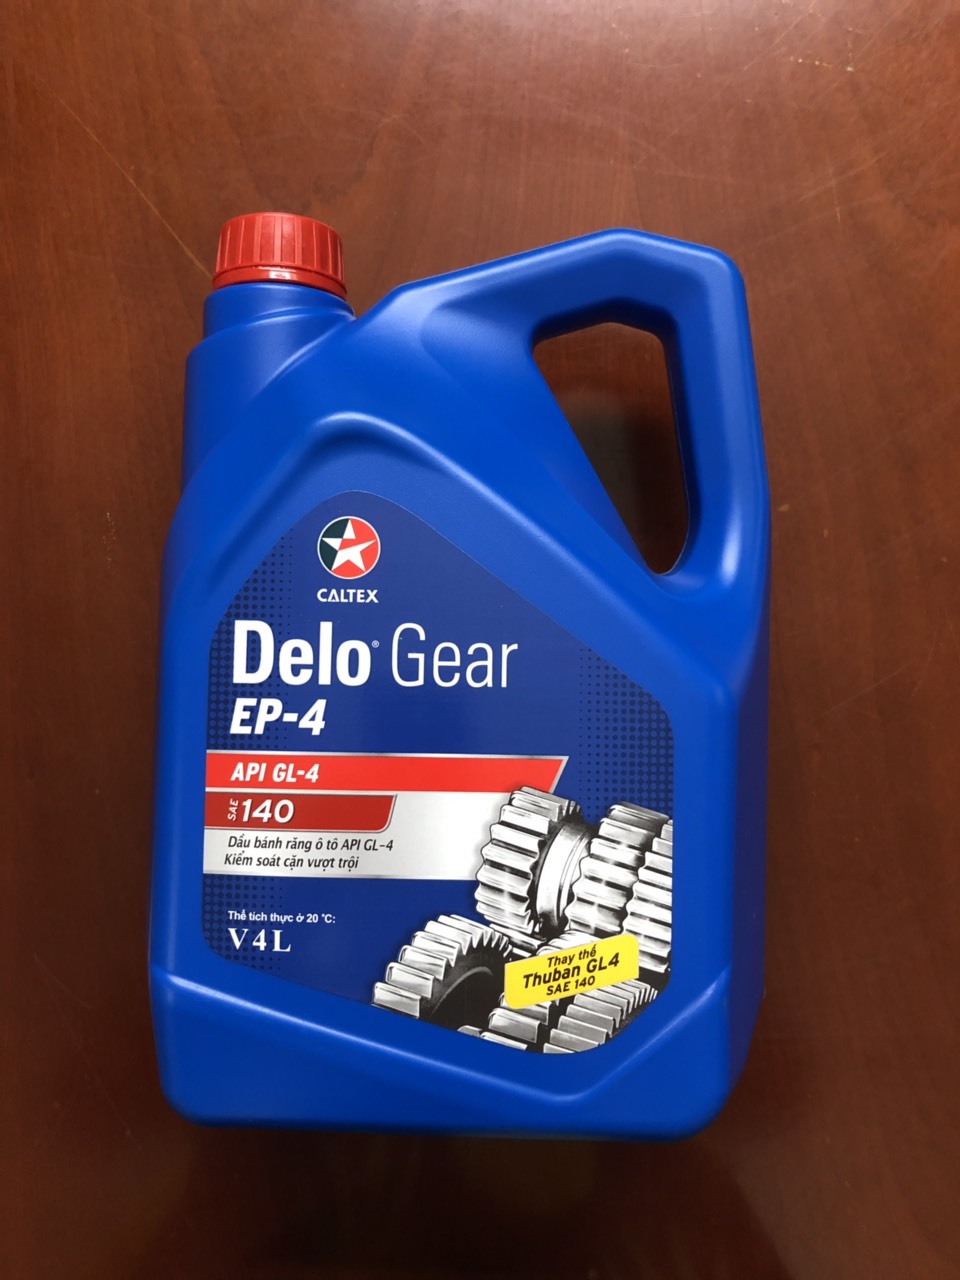 Delo gear ep-4